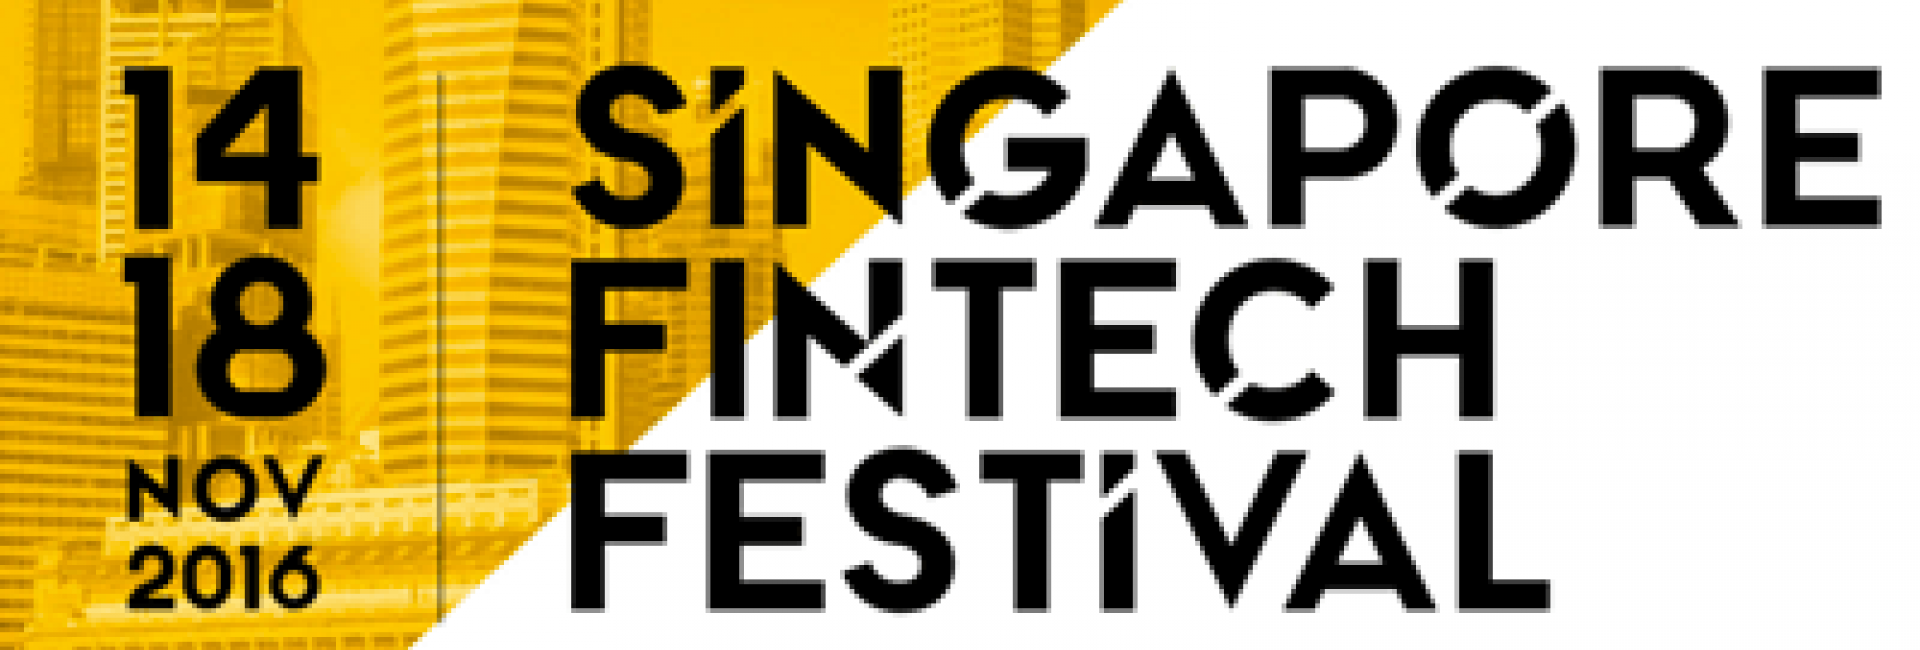 Singapore Fintech Festival 2016